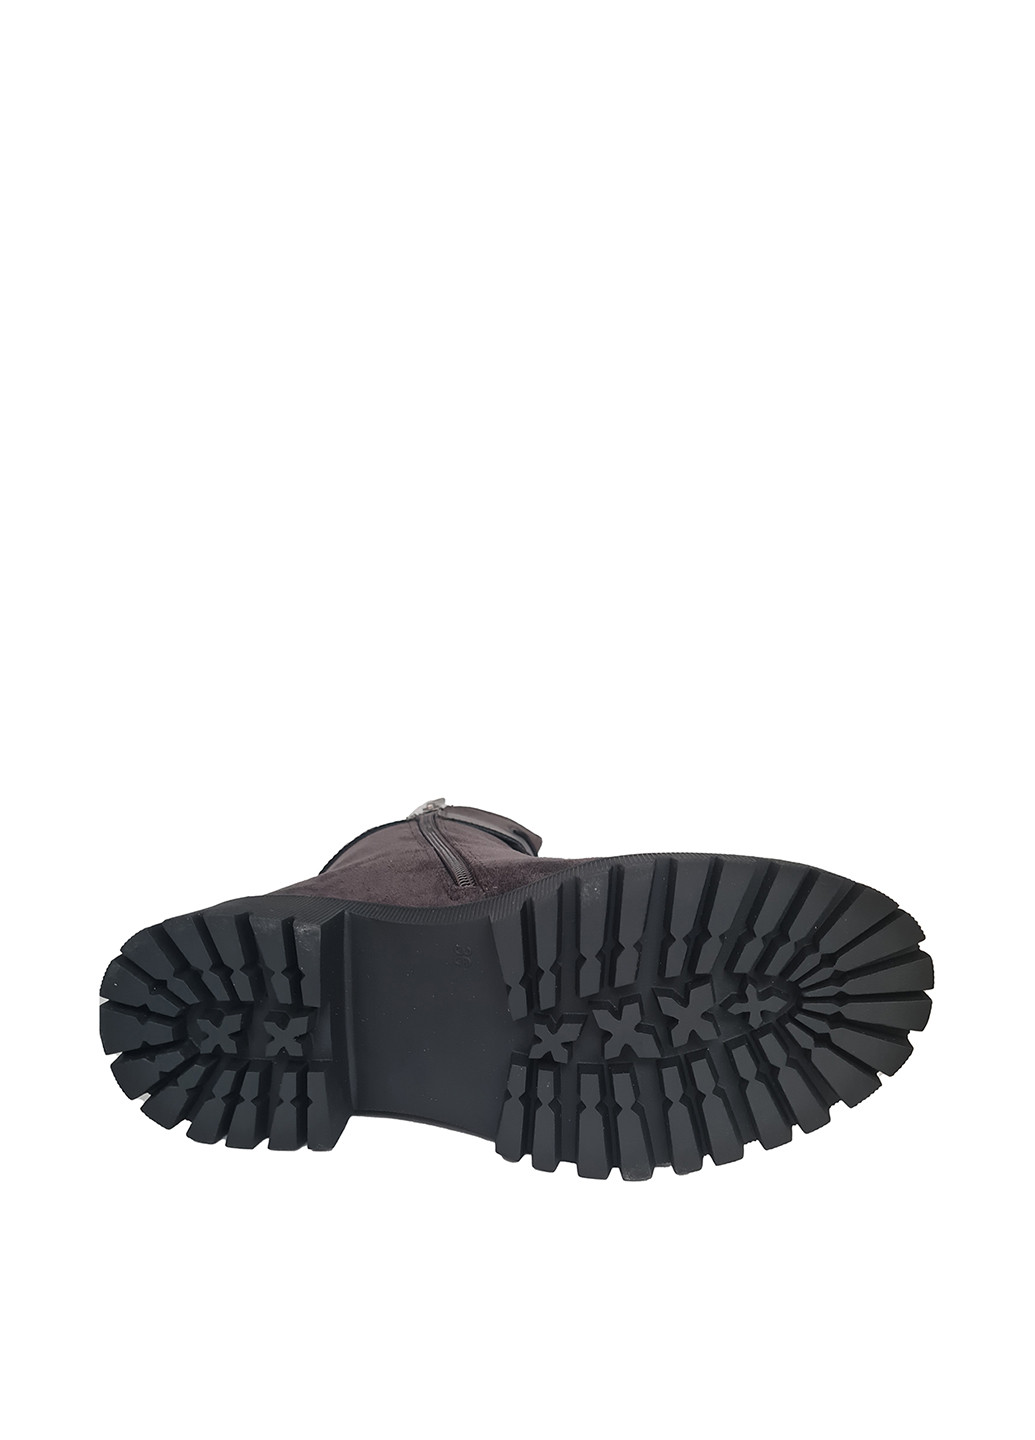 Зимние ботинки берцы Egga с пряжкой, со шнуровкой из натуральной замши